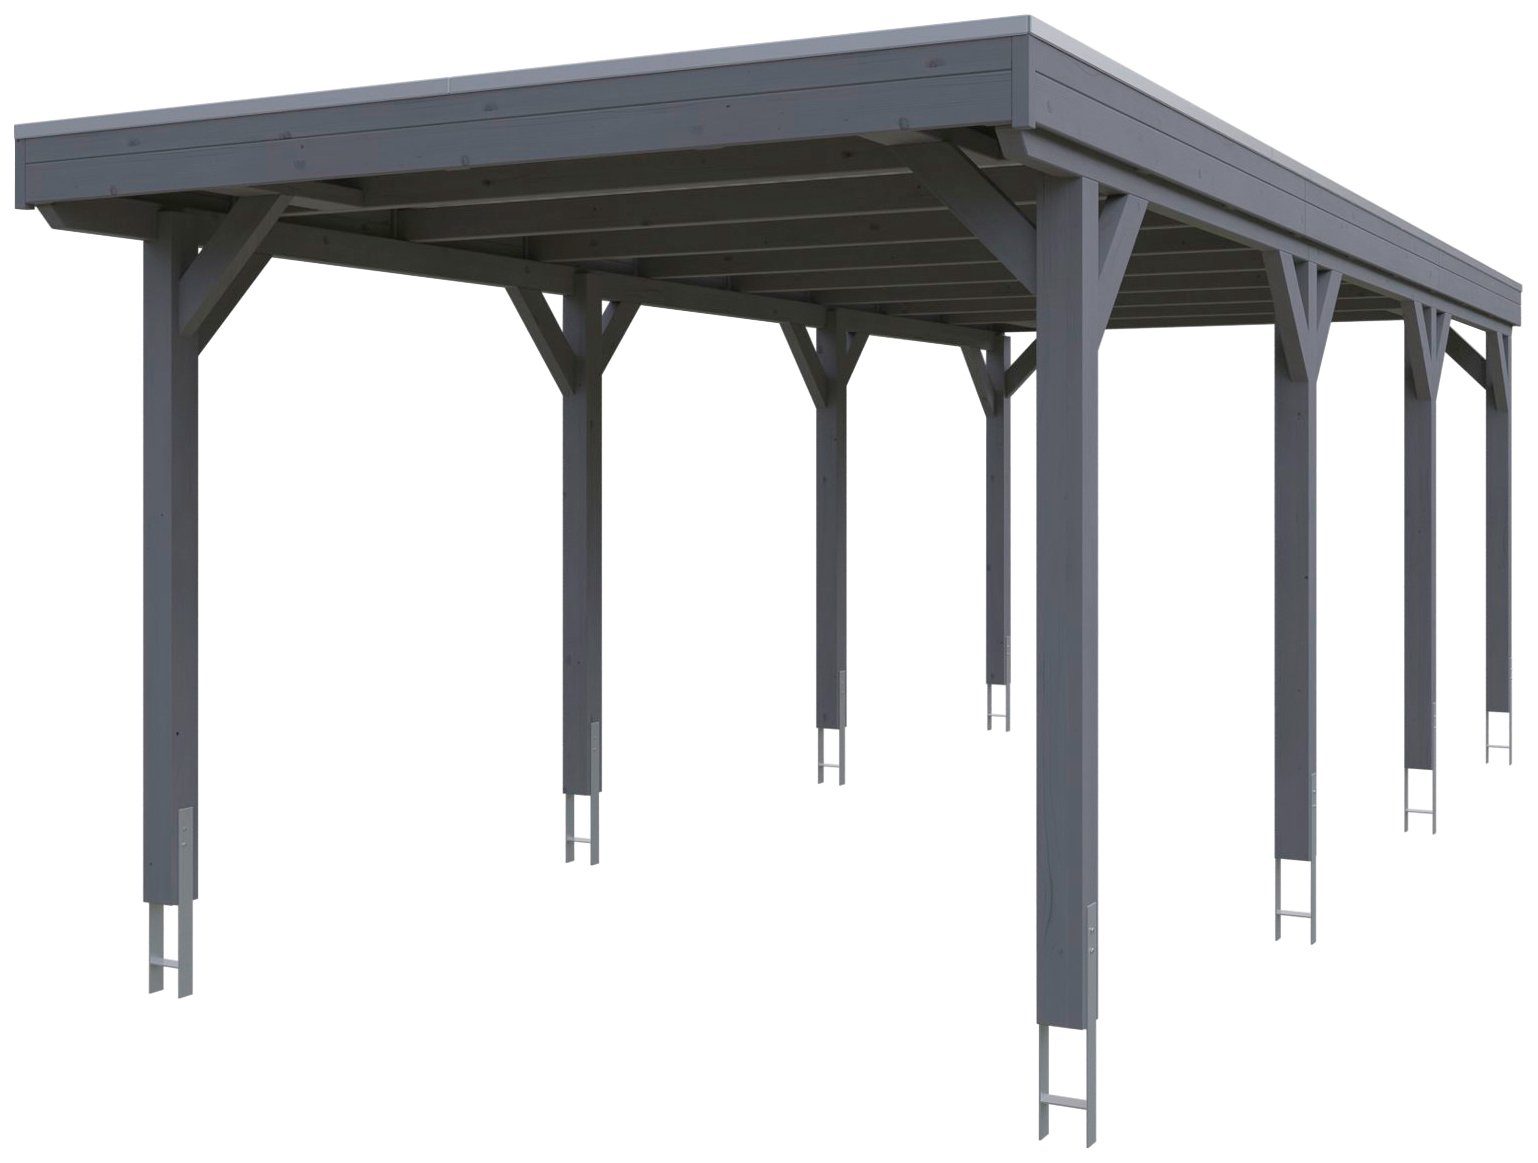 Skanholz Einzelcarport Grunewald, BxT: 321x796 cm, 289 cm Einfahrtshöhe,  mit Aluminiumdach, Flachdach mit Aluminium-Dachplatten, farblich behandelt  in schiefergrau